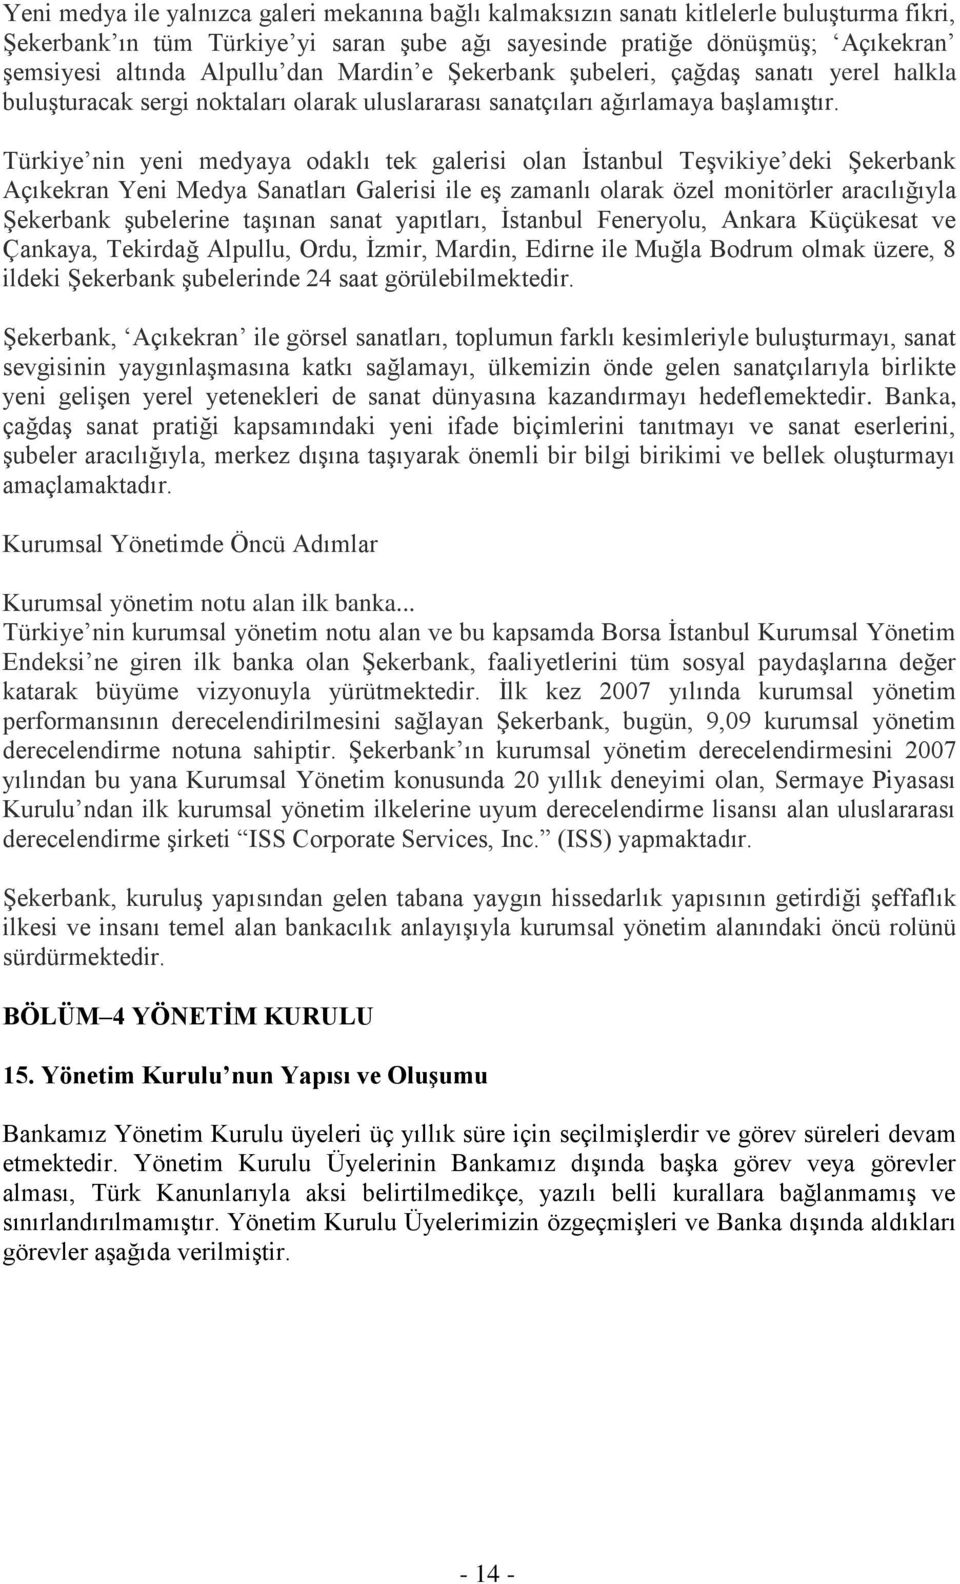 Türkiye nin yeni medyaya odaklı tek galerisi olan İstanbul Teşvikiye deki Şekerbank Açıkekran Yeni Medya Sanatları Galerisi ile eş zamanlı olarak özel monitörler aracılığıyla Şekerbank şubelerine